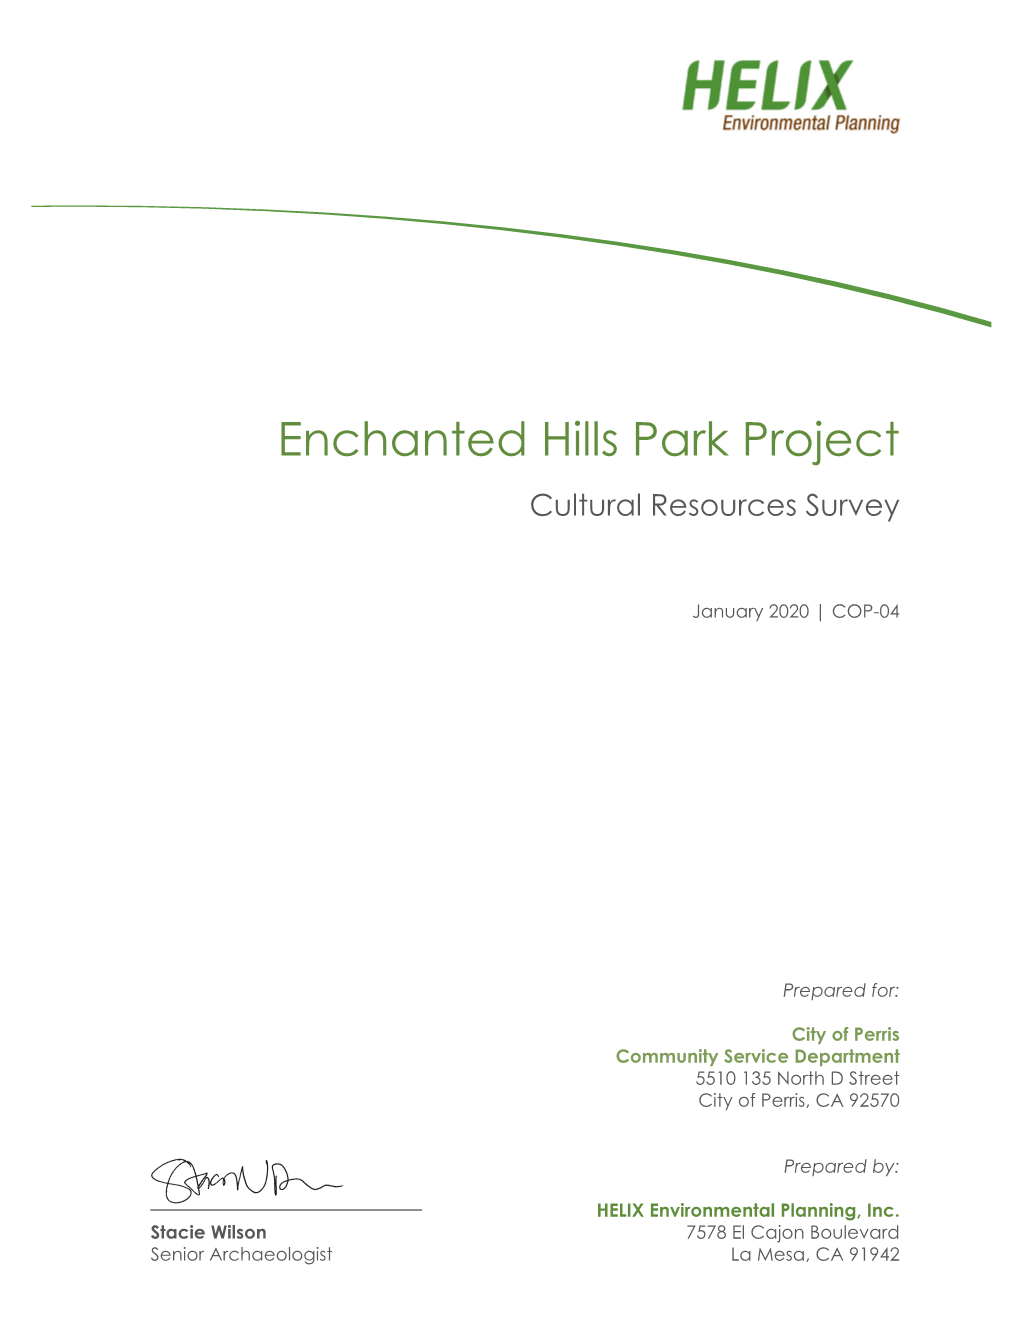 Enchanted Hills Park Project Cultural Resources Survey